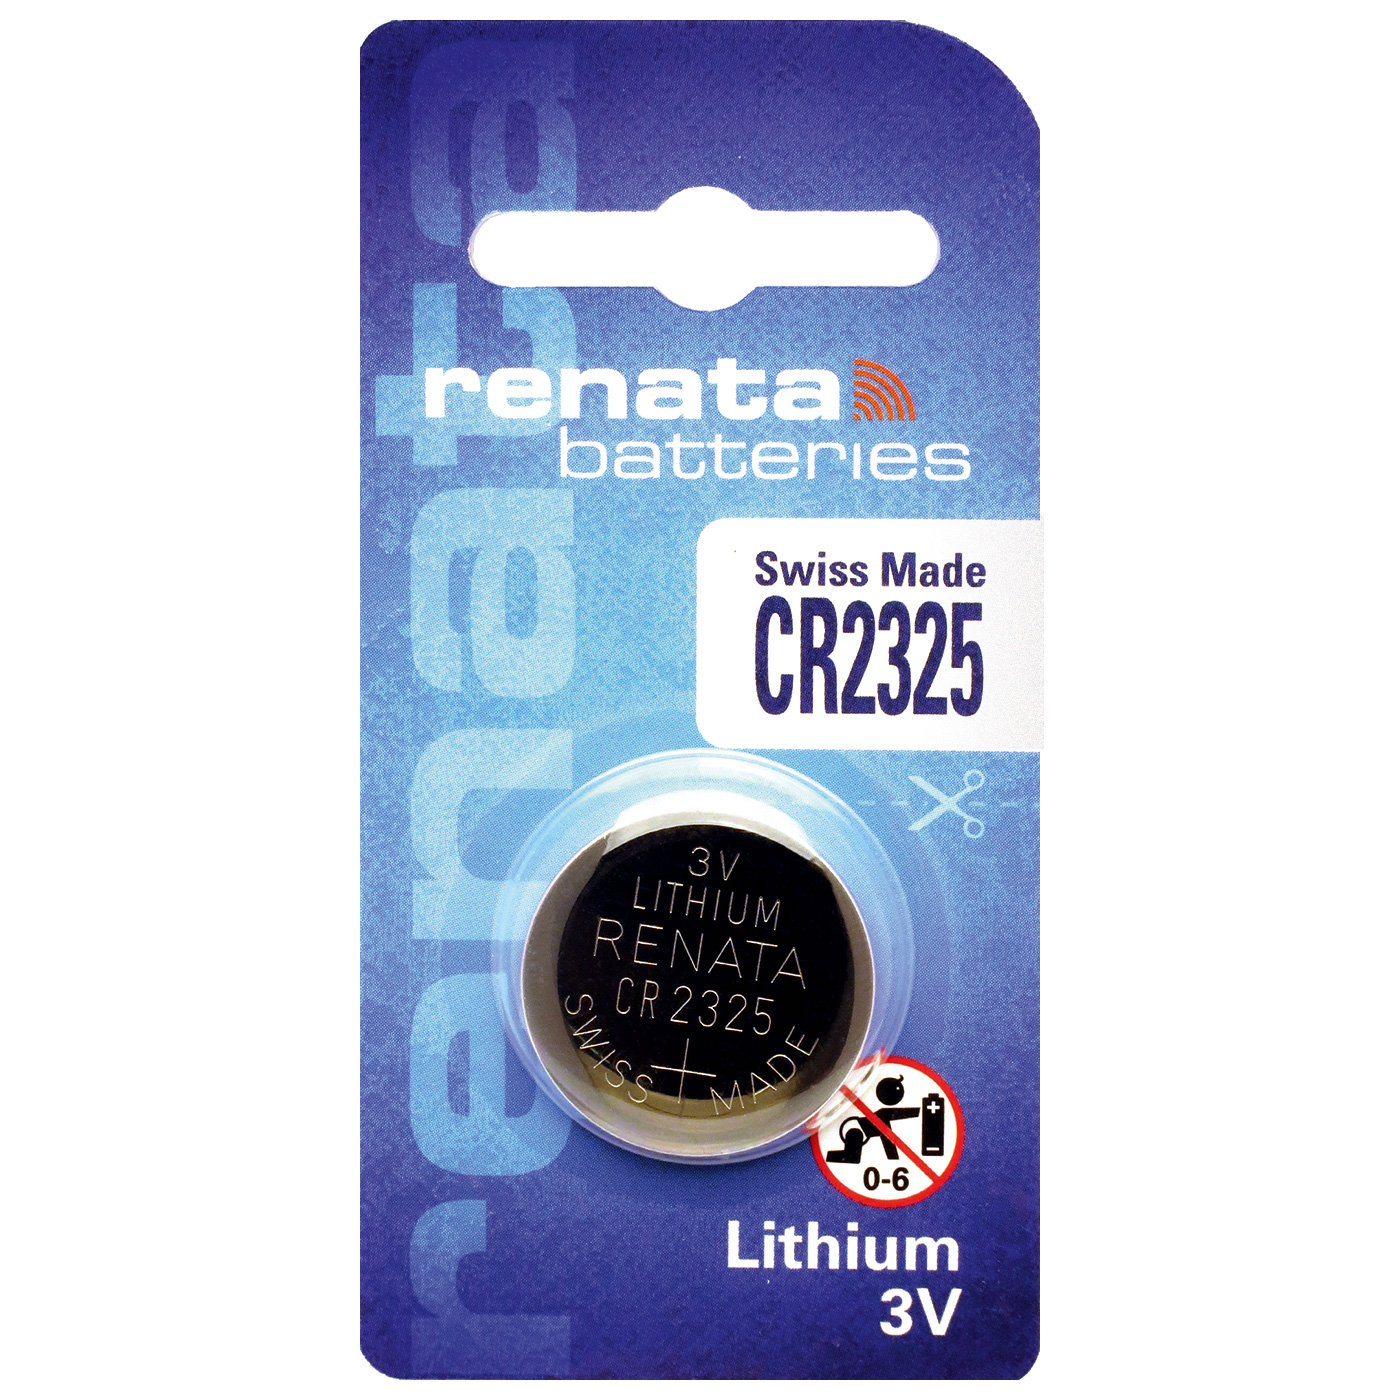 Renata CR 2325 lithium